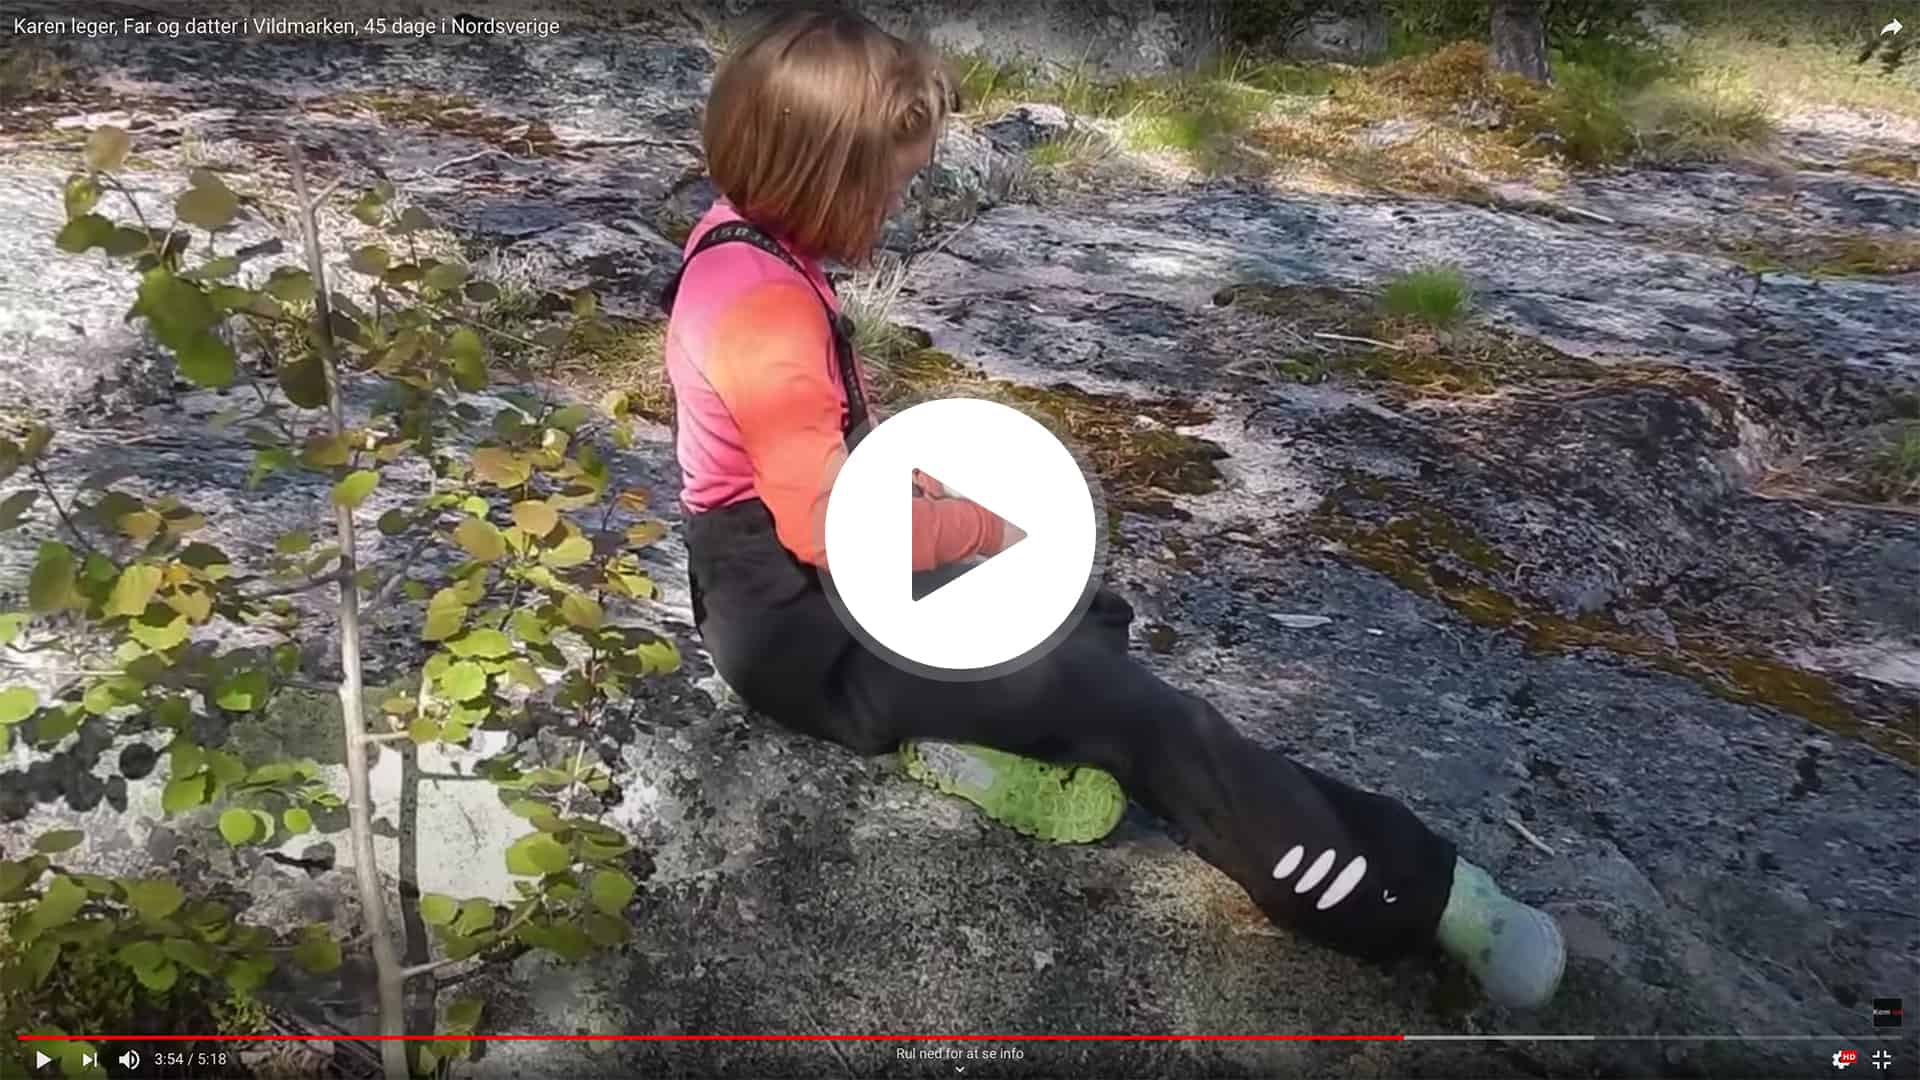 Far og datter i Vildmarken, Nordsverige, foredrag, Erik B. Jørgensen, film Karens lege på tur, YouTube